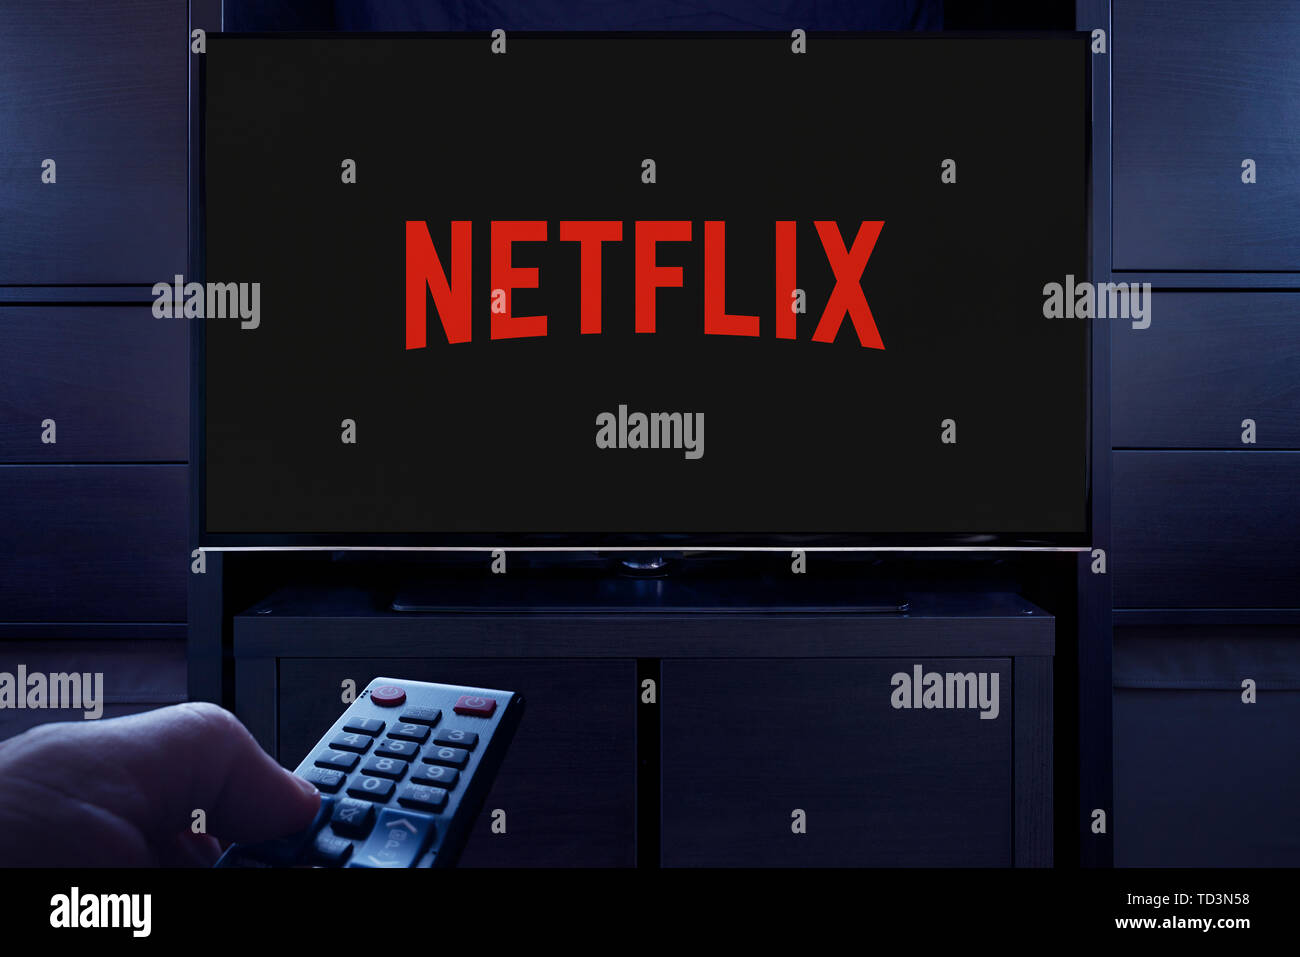 Ein Mann Punkte eine TV-Fernbedienung auf den Fernseher, die zeigt das Logo für die Netflix on demand Video Streaming Service (nur redaktionelle Nutzung). Stockfoto